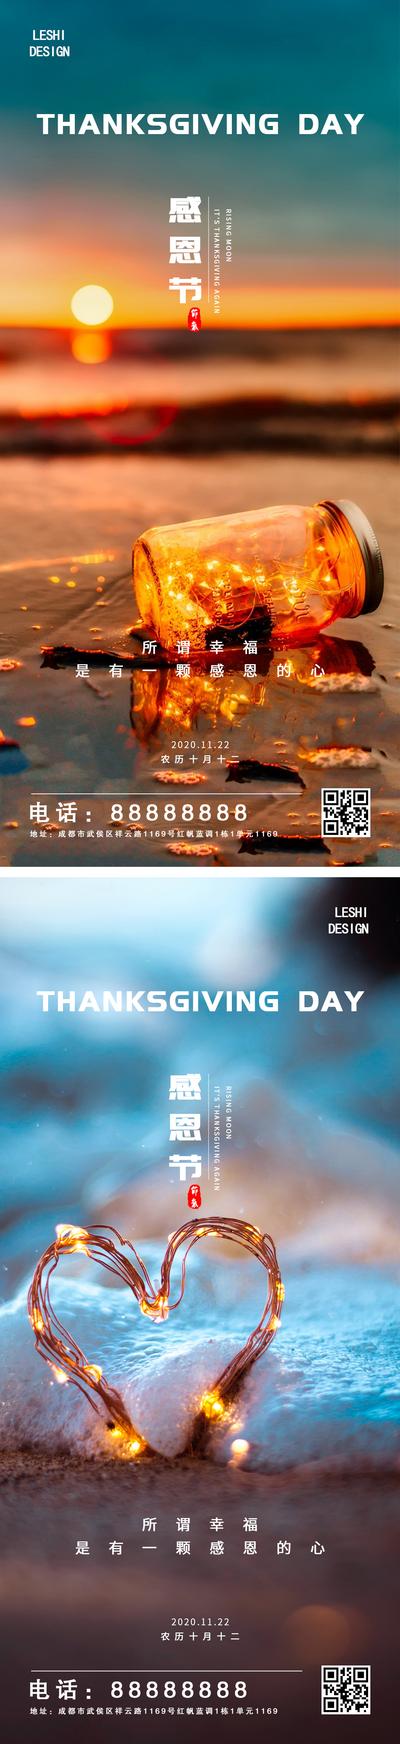 南门网 海报 房地产 公历节日 感恩节 简约 风景 系列